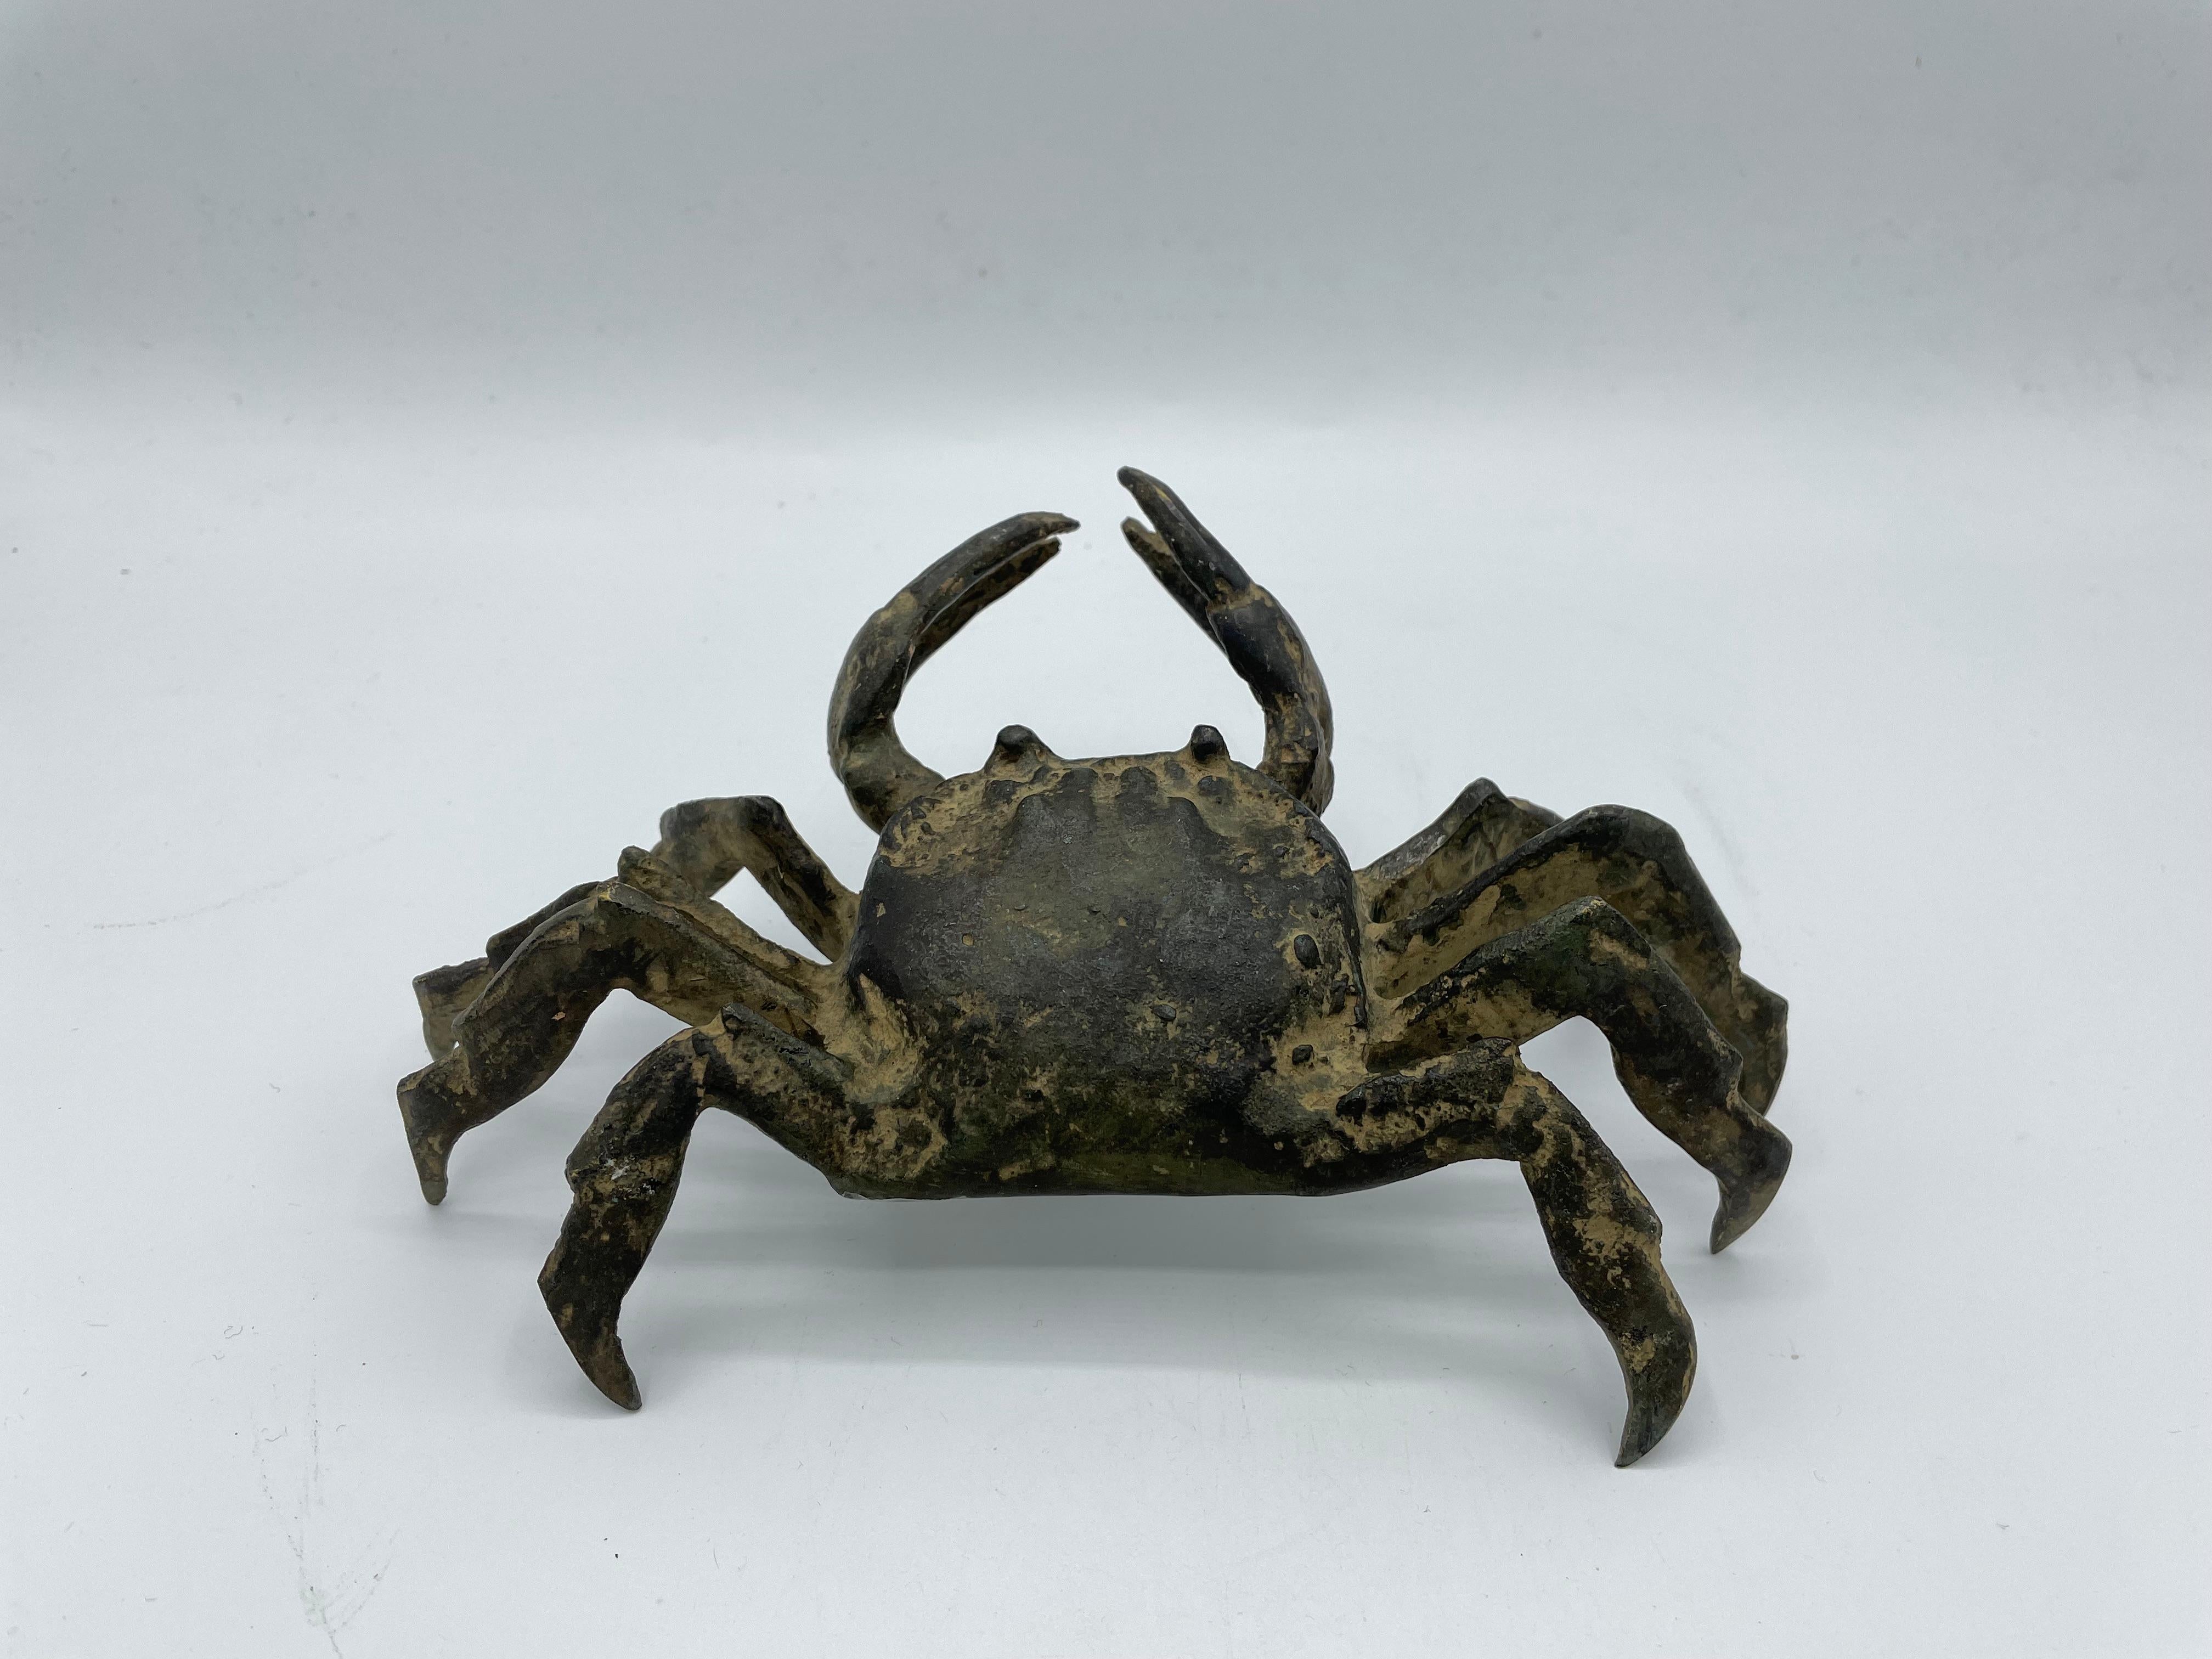 Objekt aus Krabbe mit Bronze:
Ein sehr wertvolles Objekt, das vor dem Zweiten Weltkrieg hergestellt wurde, als Bronze nur selten zu finden war.
Auf der Unterseite dieser Krabbe ist in roter Farbe ein 